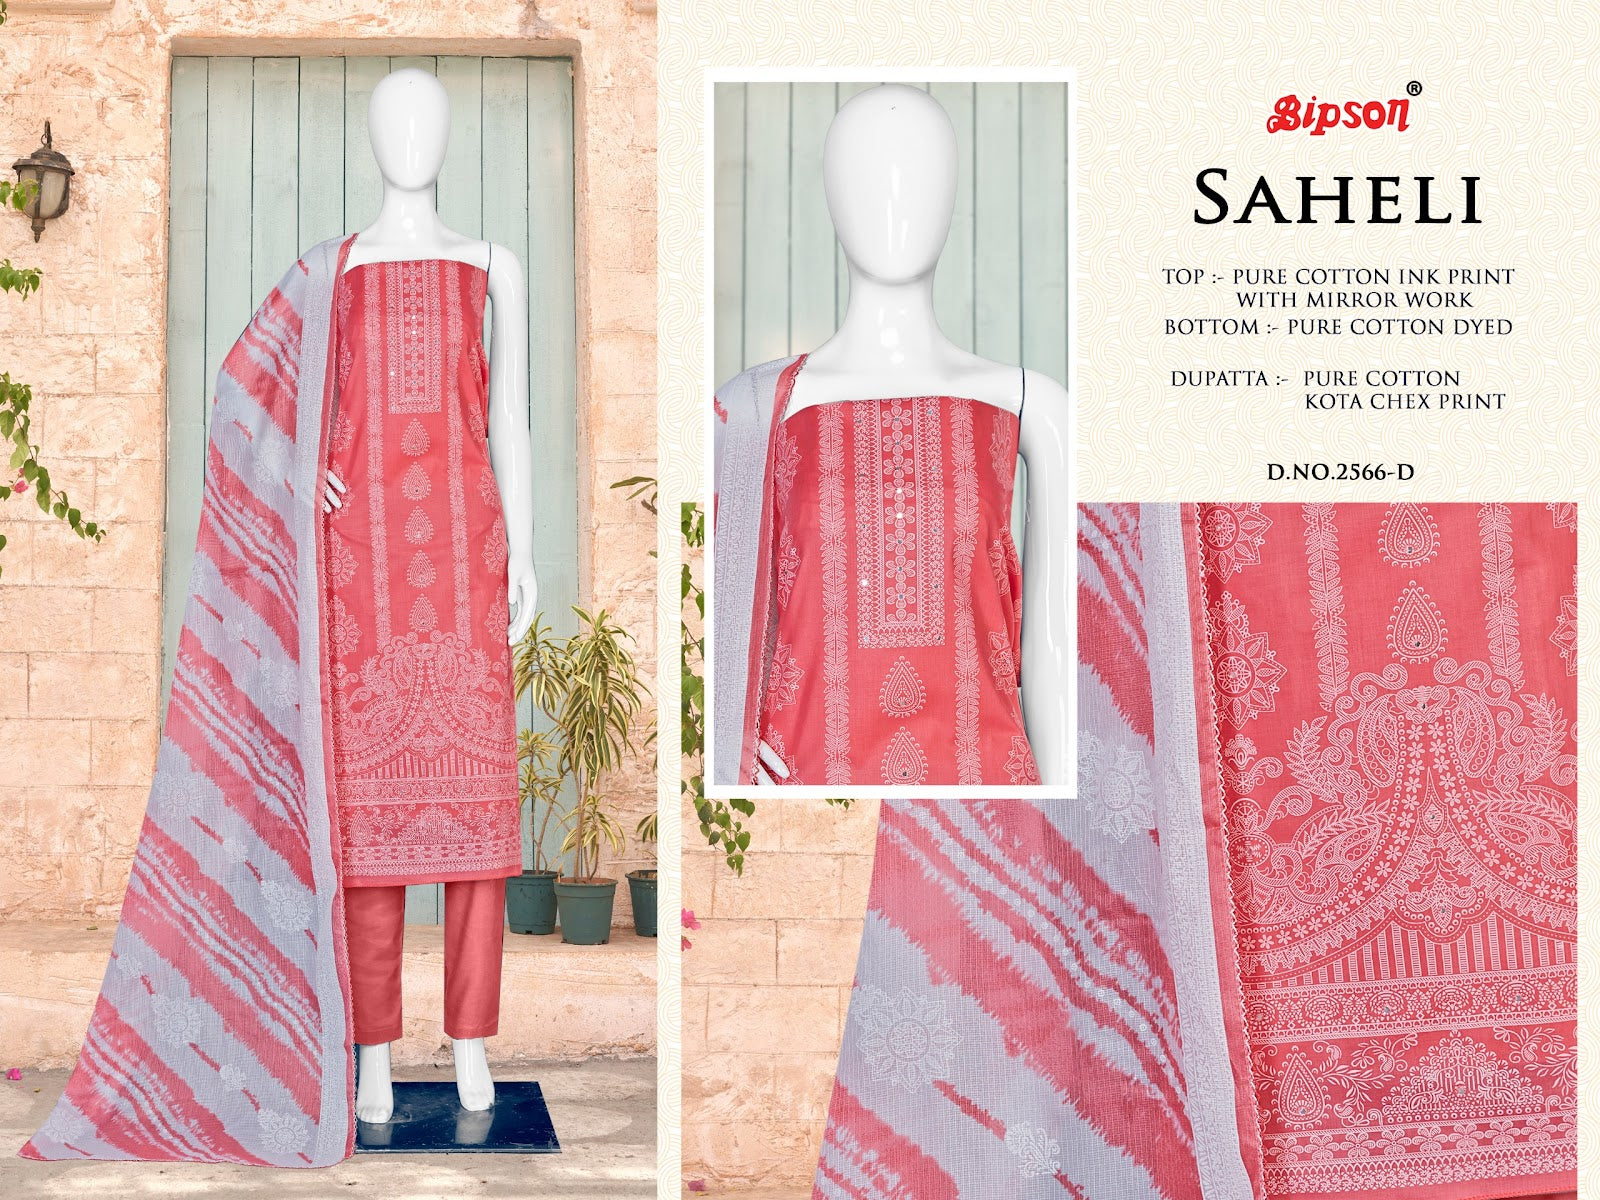 Saheli 2566 Bipson Prints Cotton Pant Style Suits